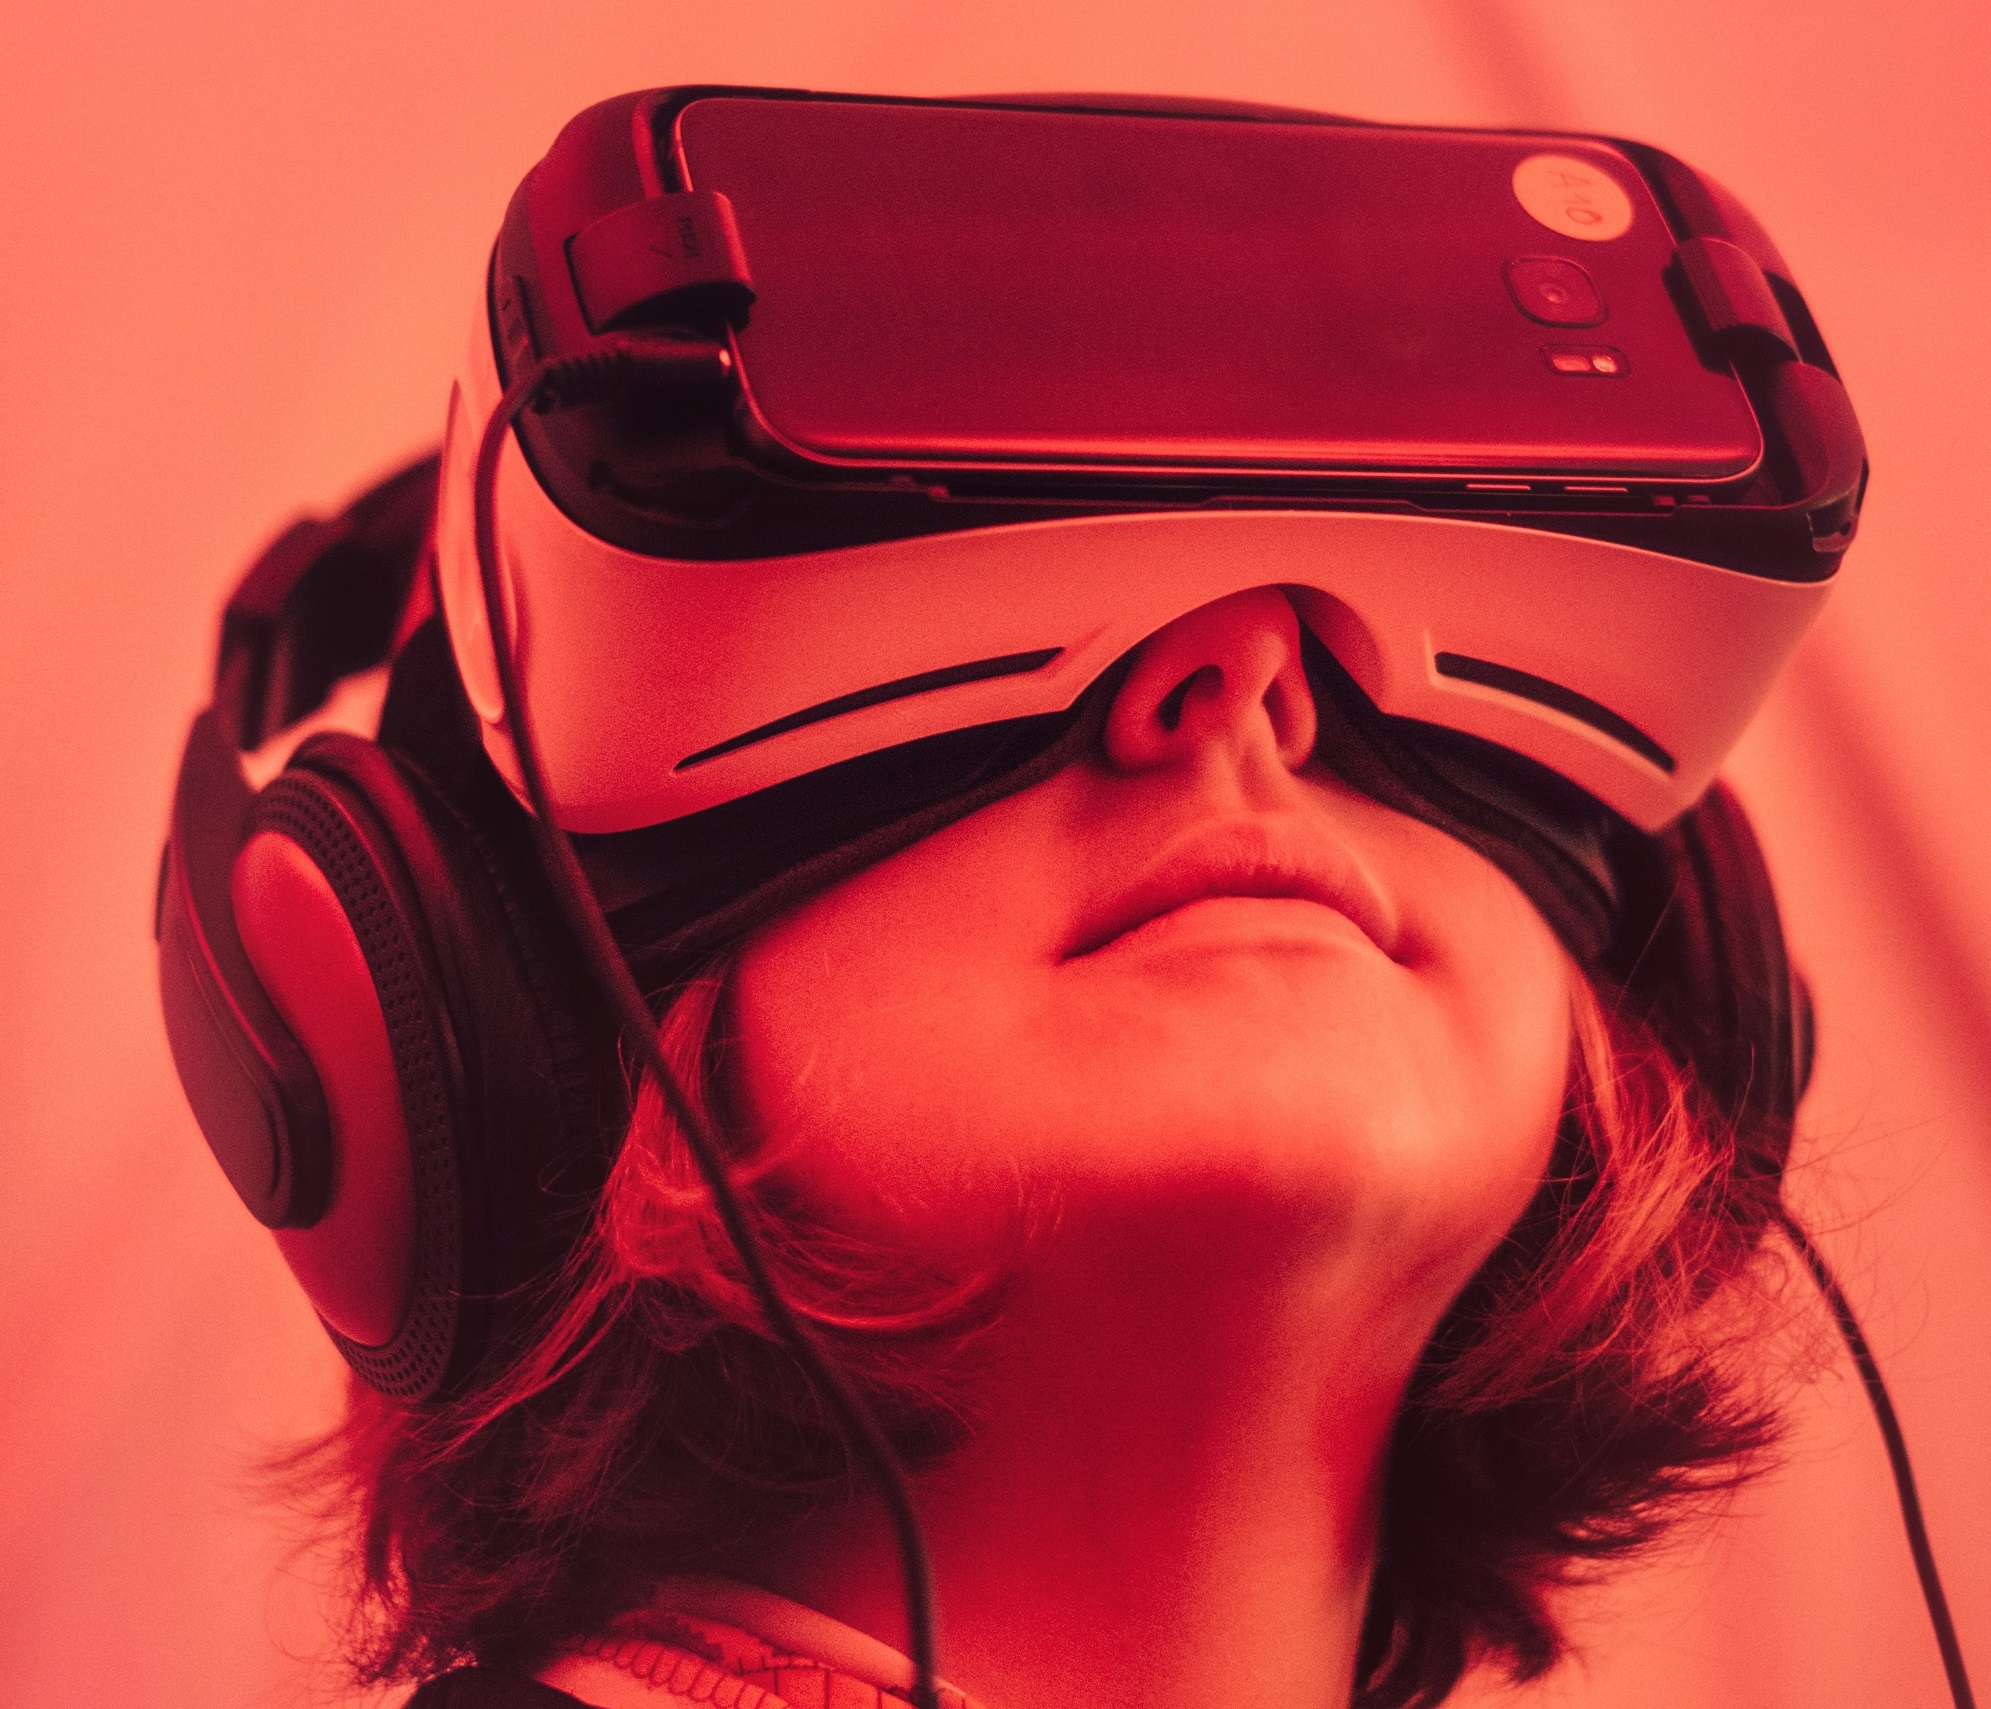 Bild einer Frau, die eine Virtual Reality Brille trägt mit rotem Licht.